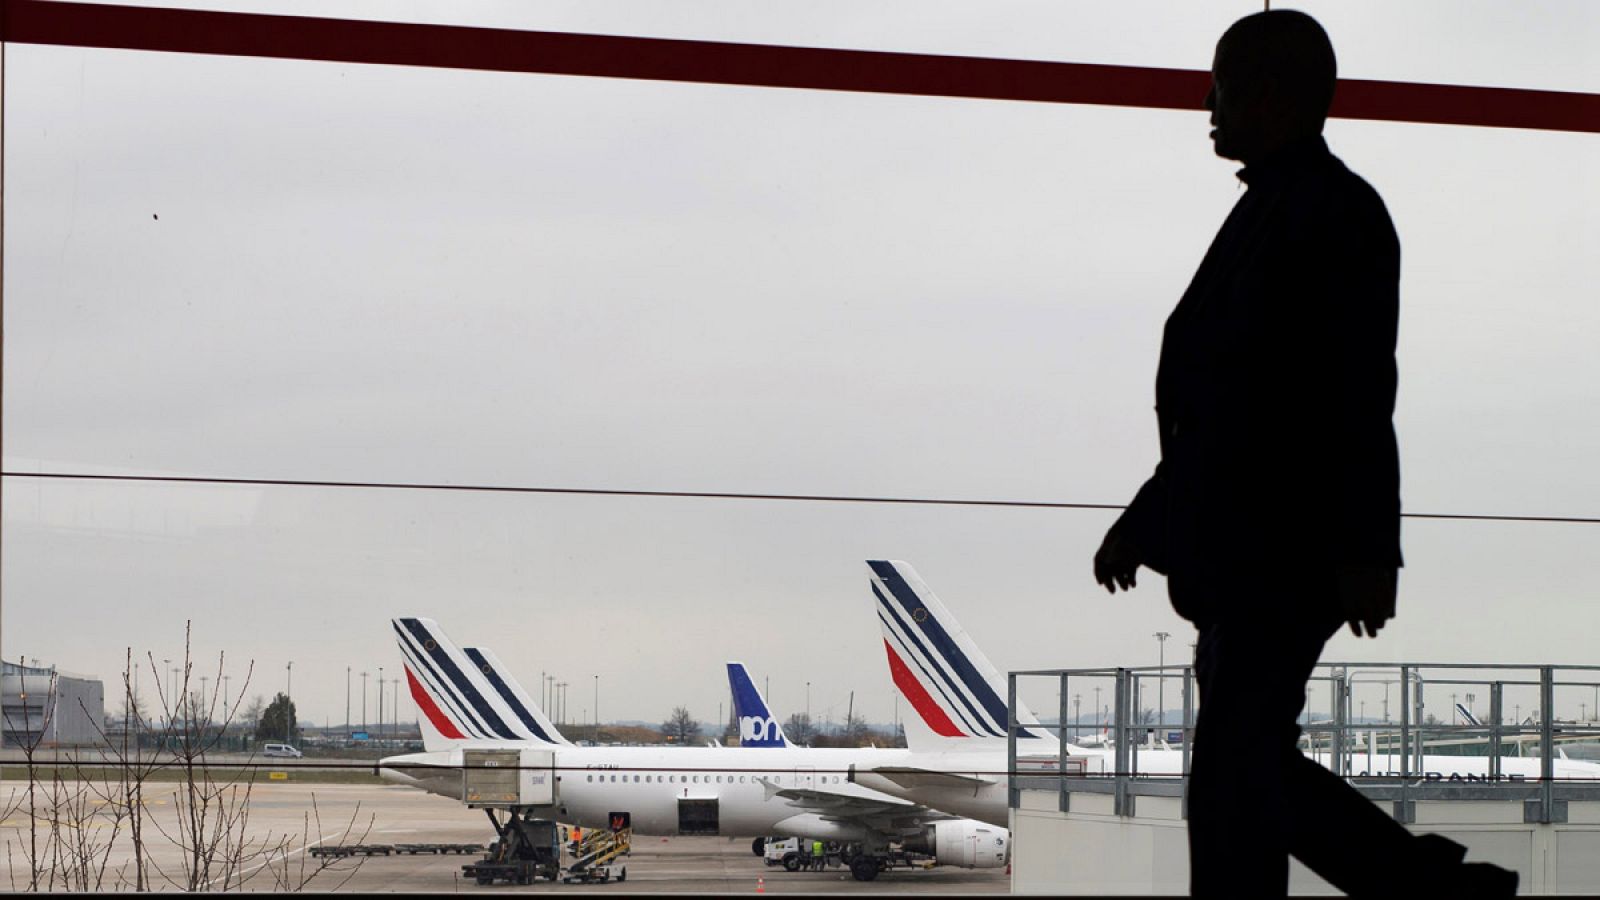 Un pasajero camina por una terminal del aeropuerto París-Charles de Gaulle, desde donde se observan varios aviones de la compañía Air France